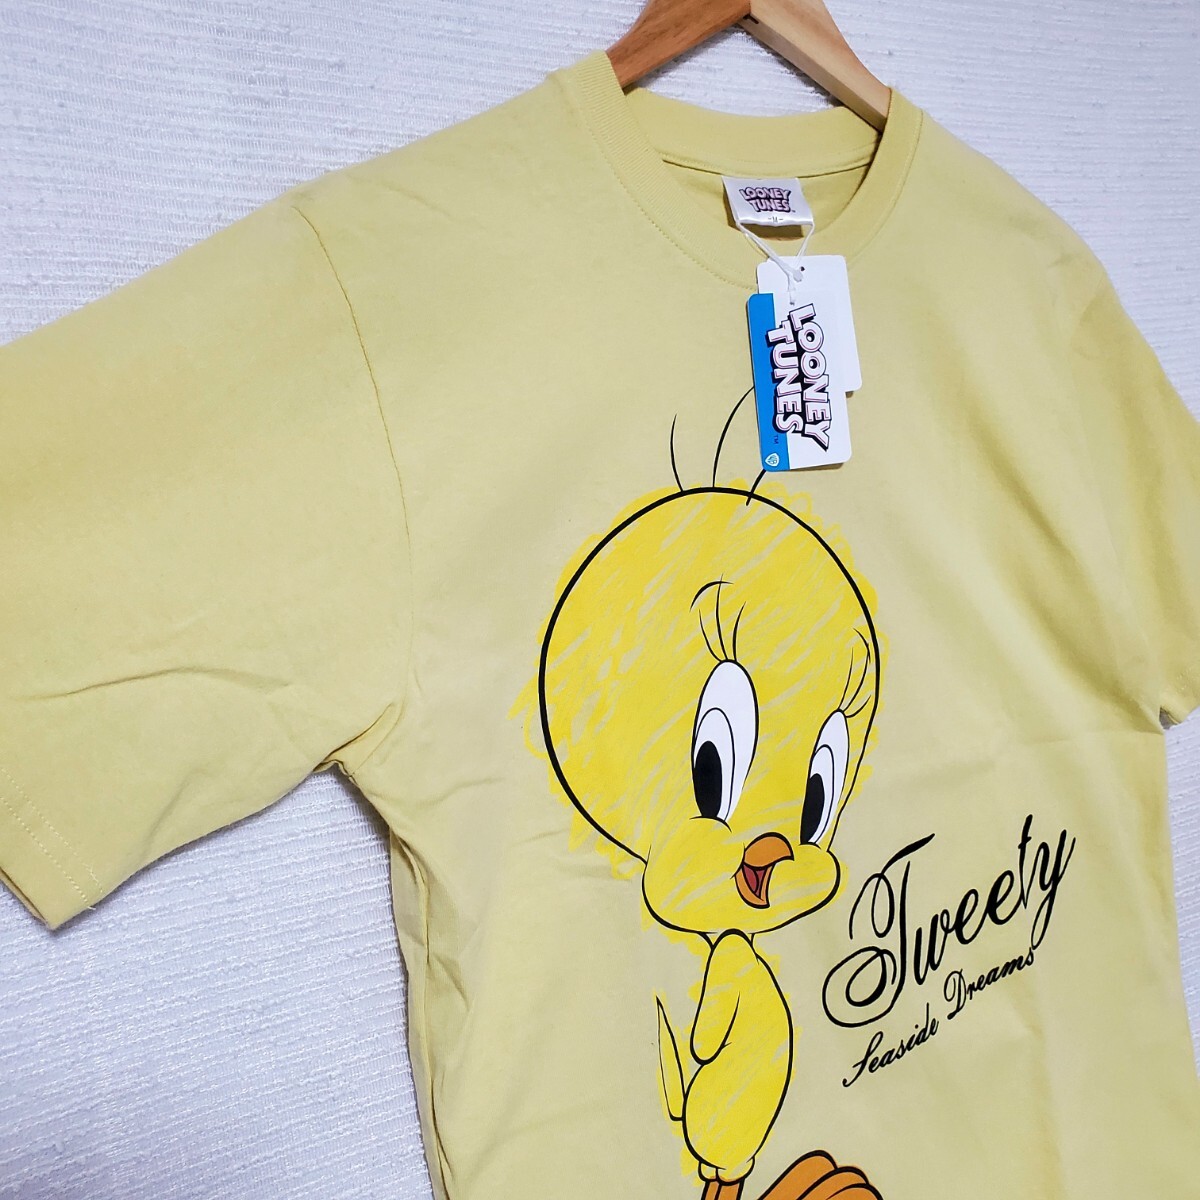 Looney Tunes ルーニー・テューンズ トゥイーティー 半袖 Tシャツ 新品 メンズ 紳士 Mサイズ くすみイエロー 黄色 プリント Tweety 綿100%_画像3